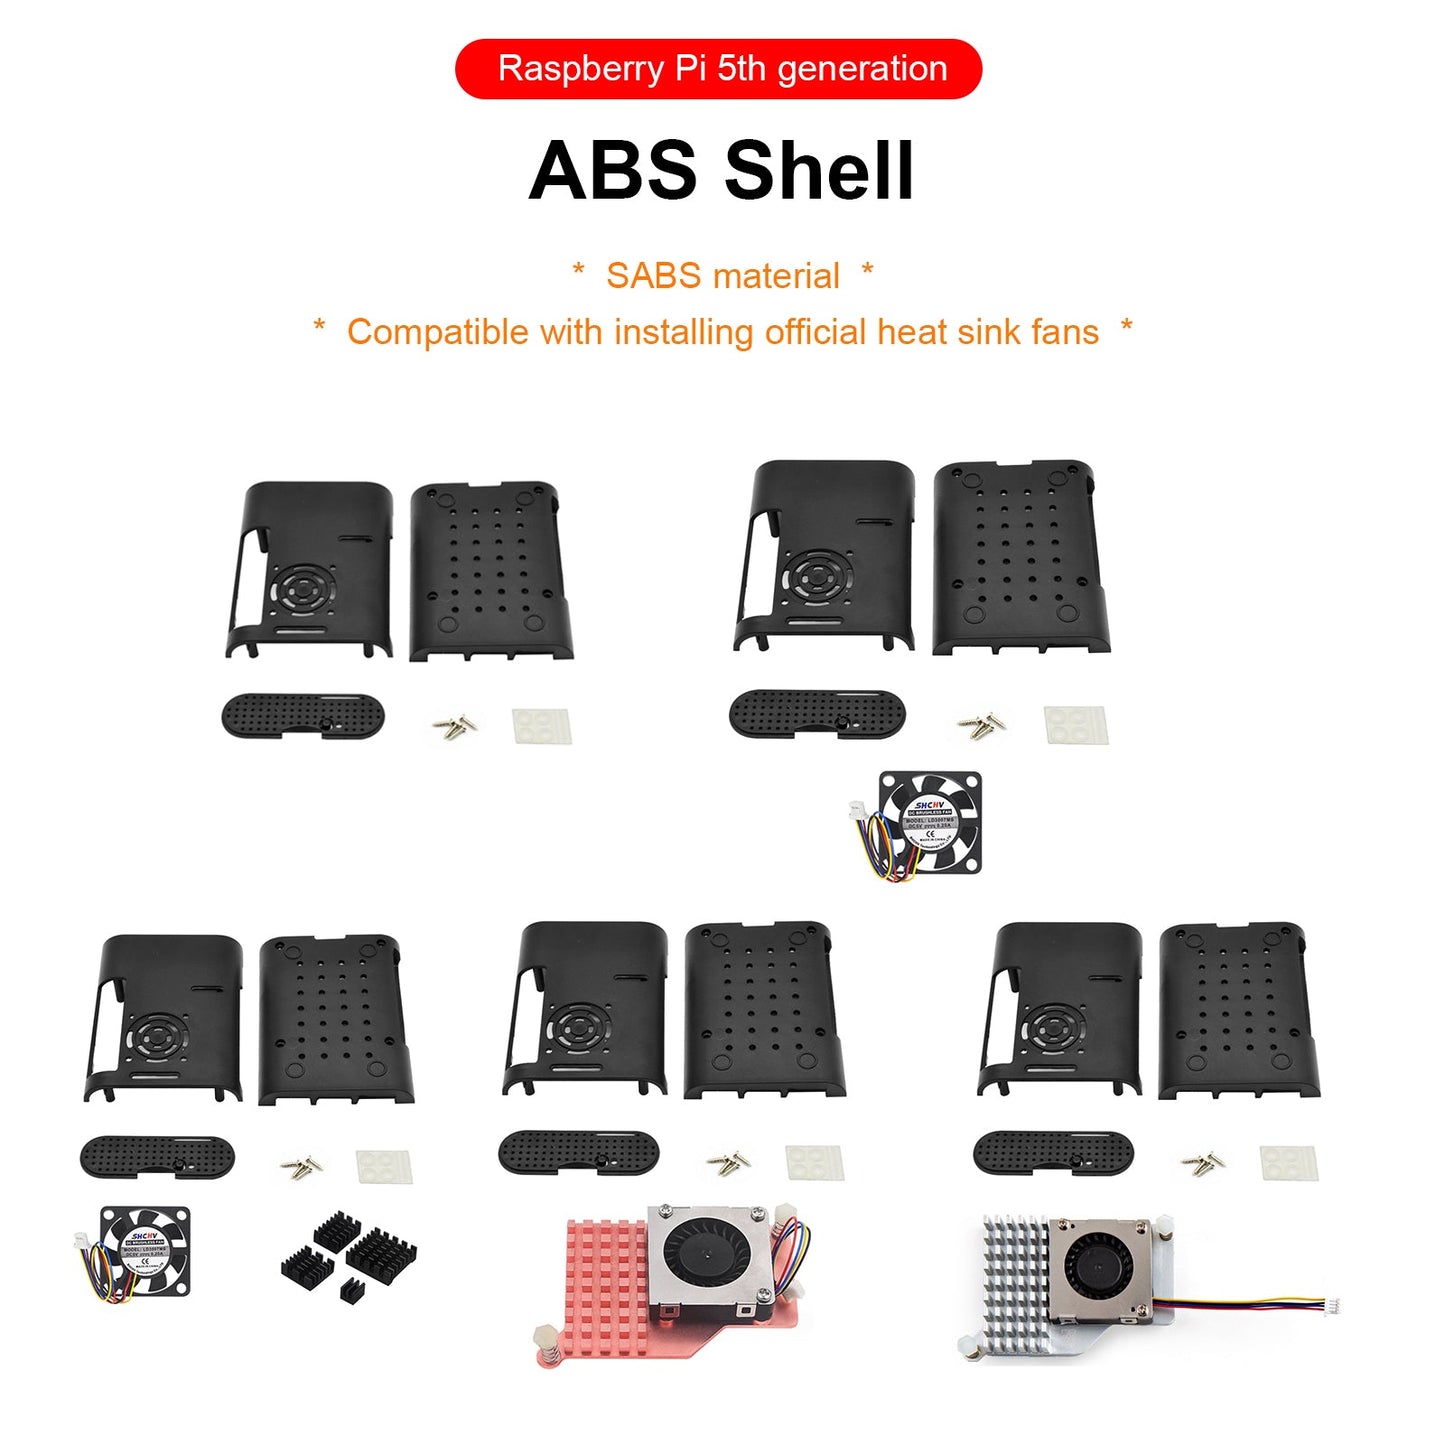 ABS-Schutzgehäuse der 5. Generation, aktiver Kühler mit PWM-Geschwindigkeitsregulierung für Lüfter